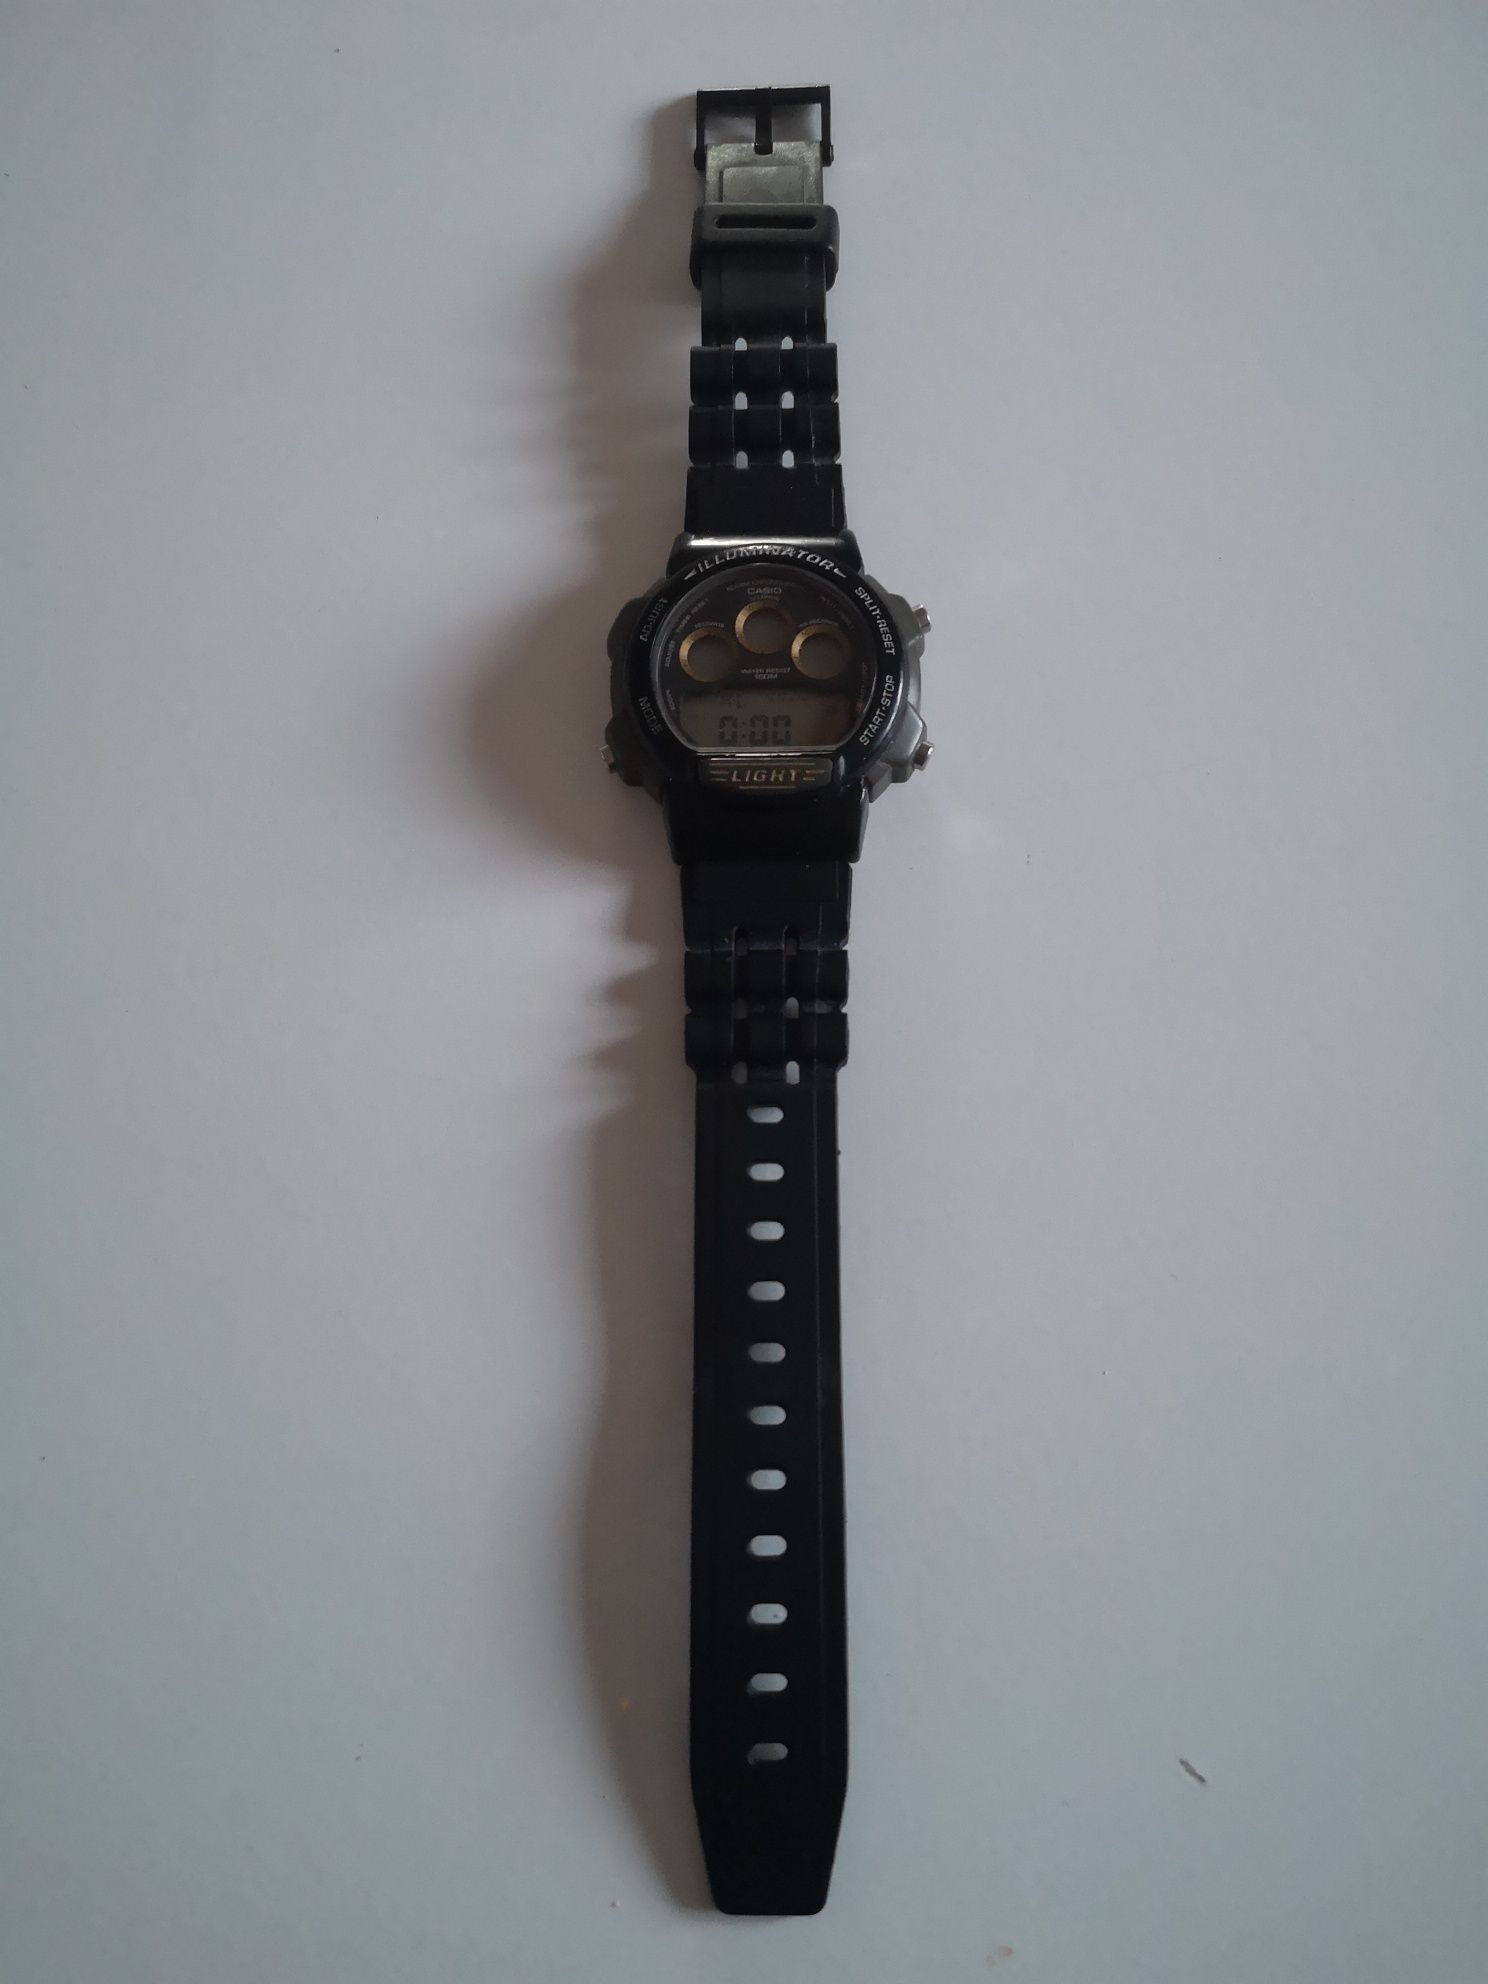 Zegarek Casio W-727H 1995 niesprawny wysyłka